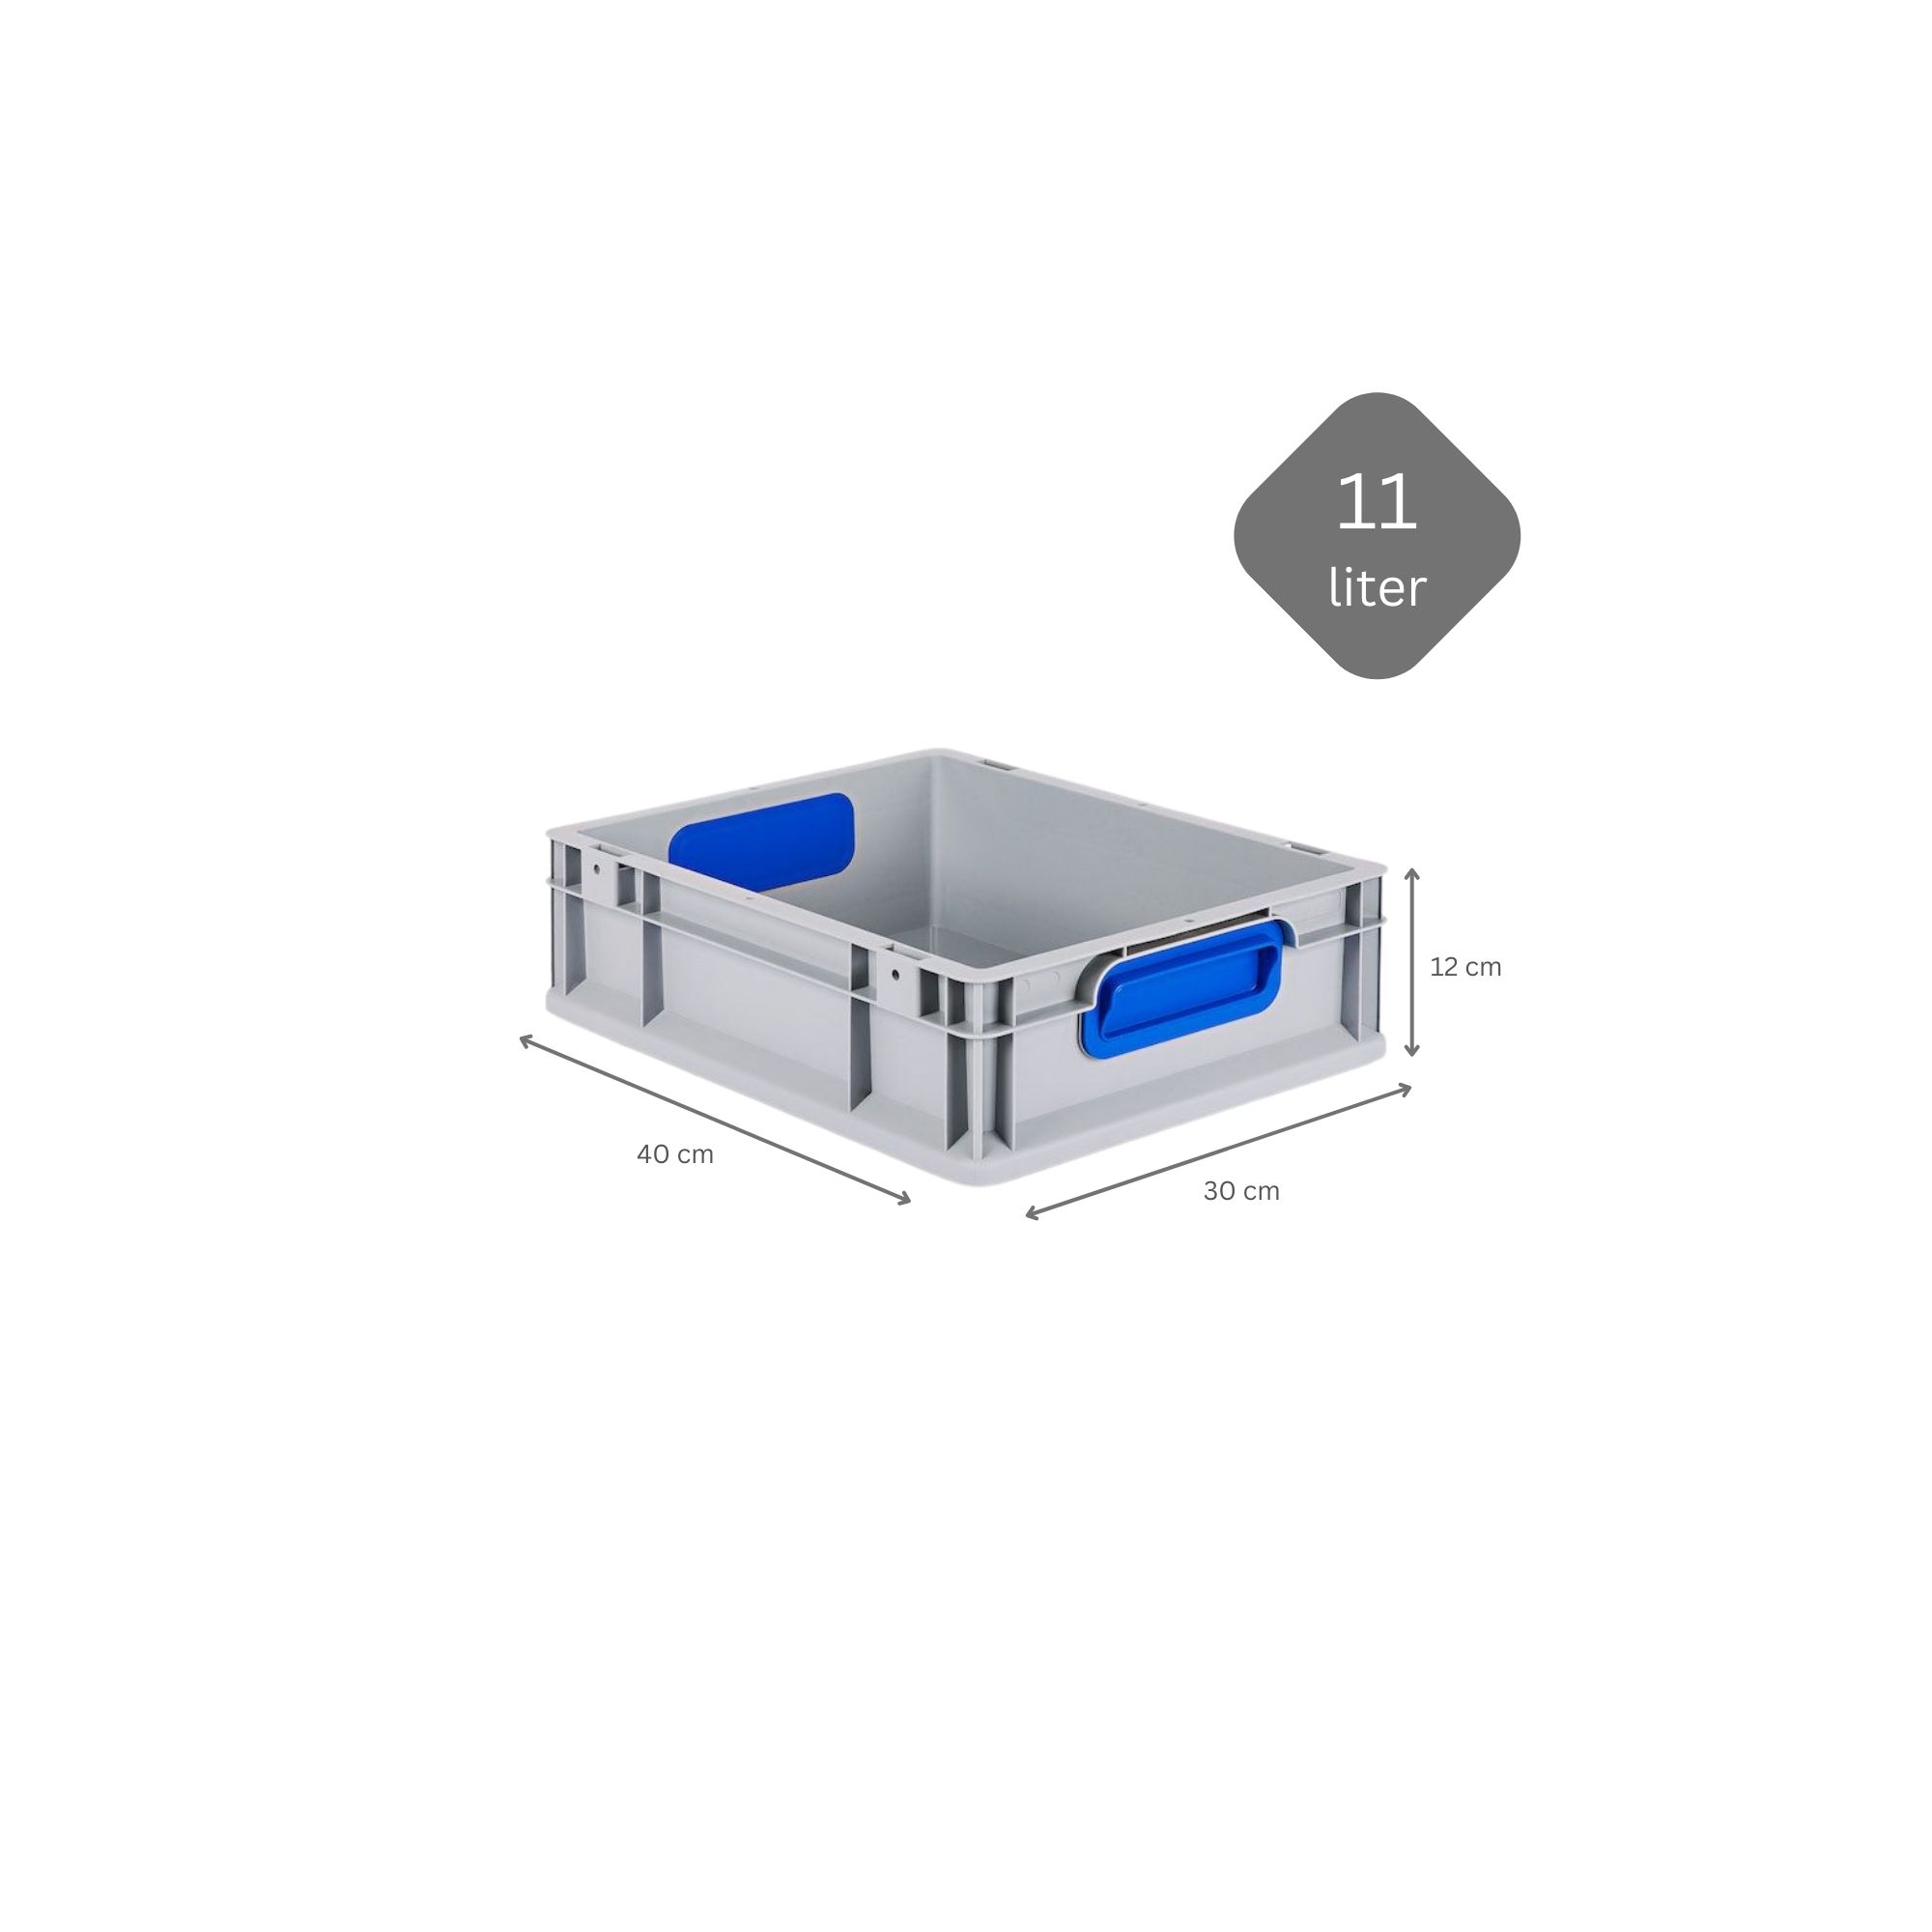 SparSet 5x Eurobox NextGen Color mit Auflagedeckel und Schiebeschnappverschlüsse | HxBxT 12x30x40cm | 11 Liter | Griffe blau geschlossen | Glatter Boden | Eurobehälter, Transportbox, Transportbehälter, Stapelbehälter